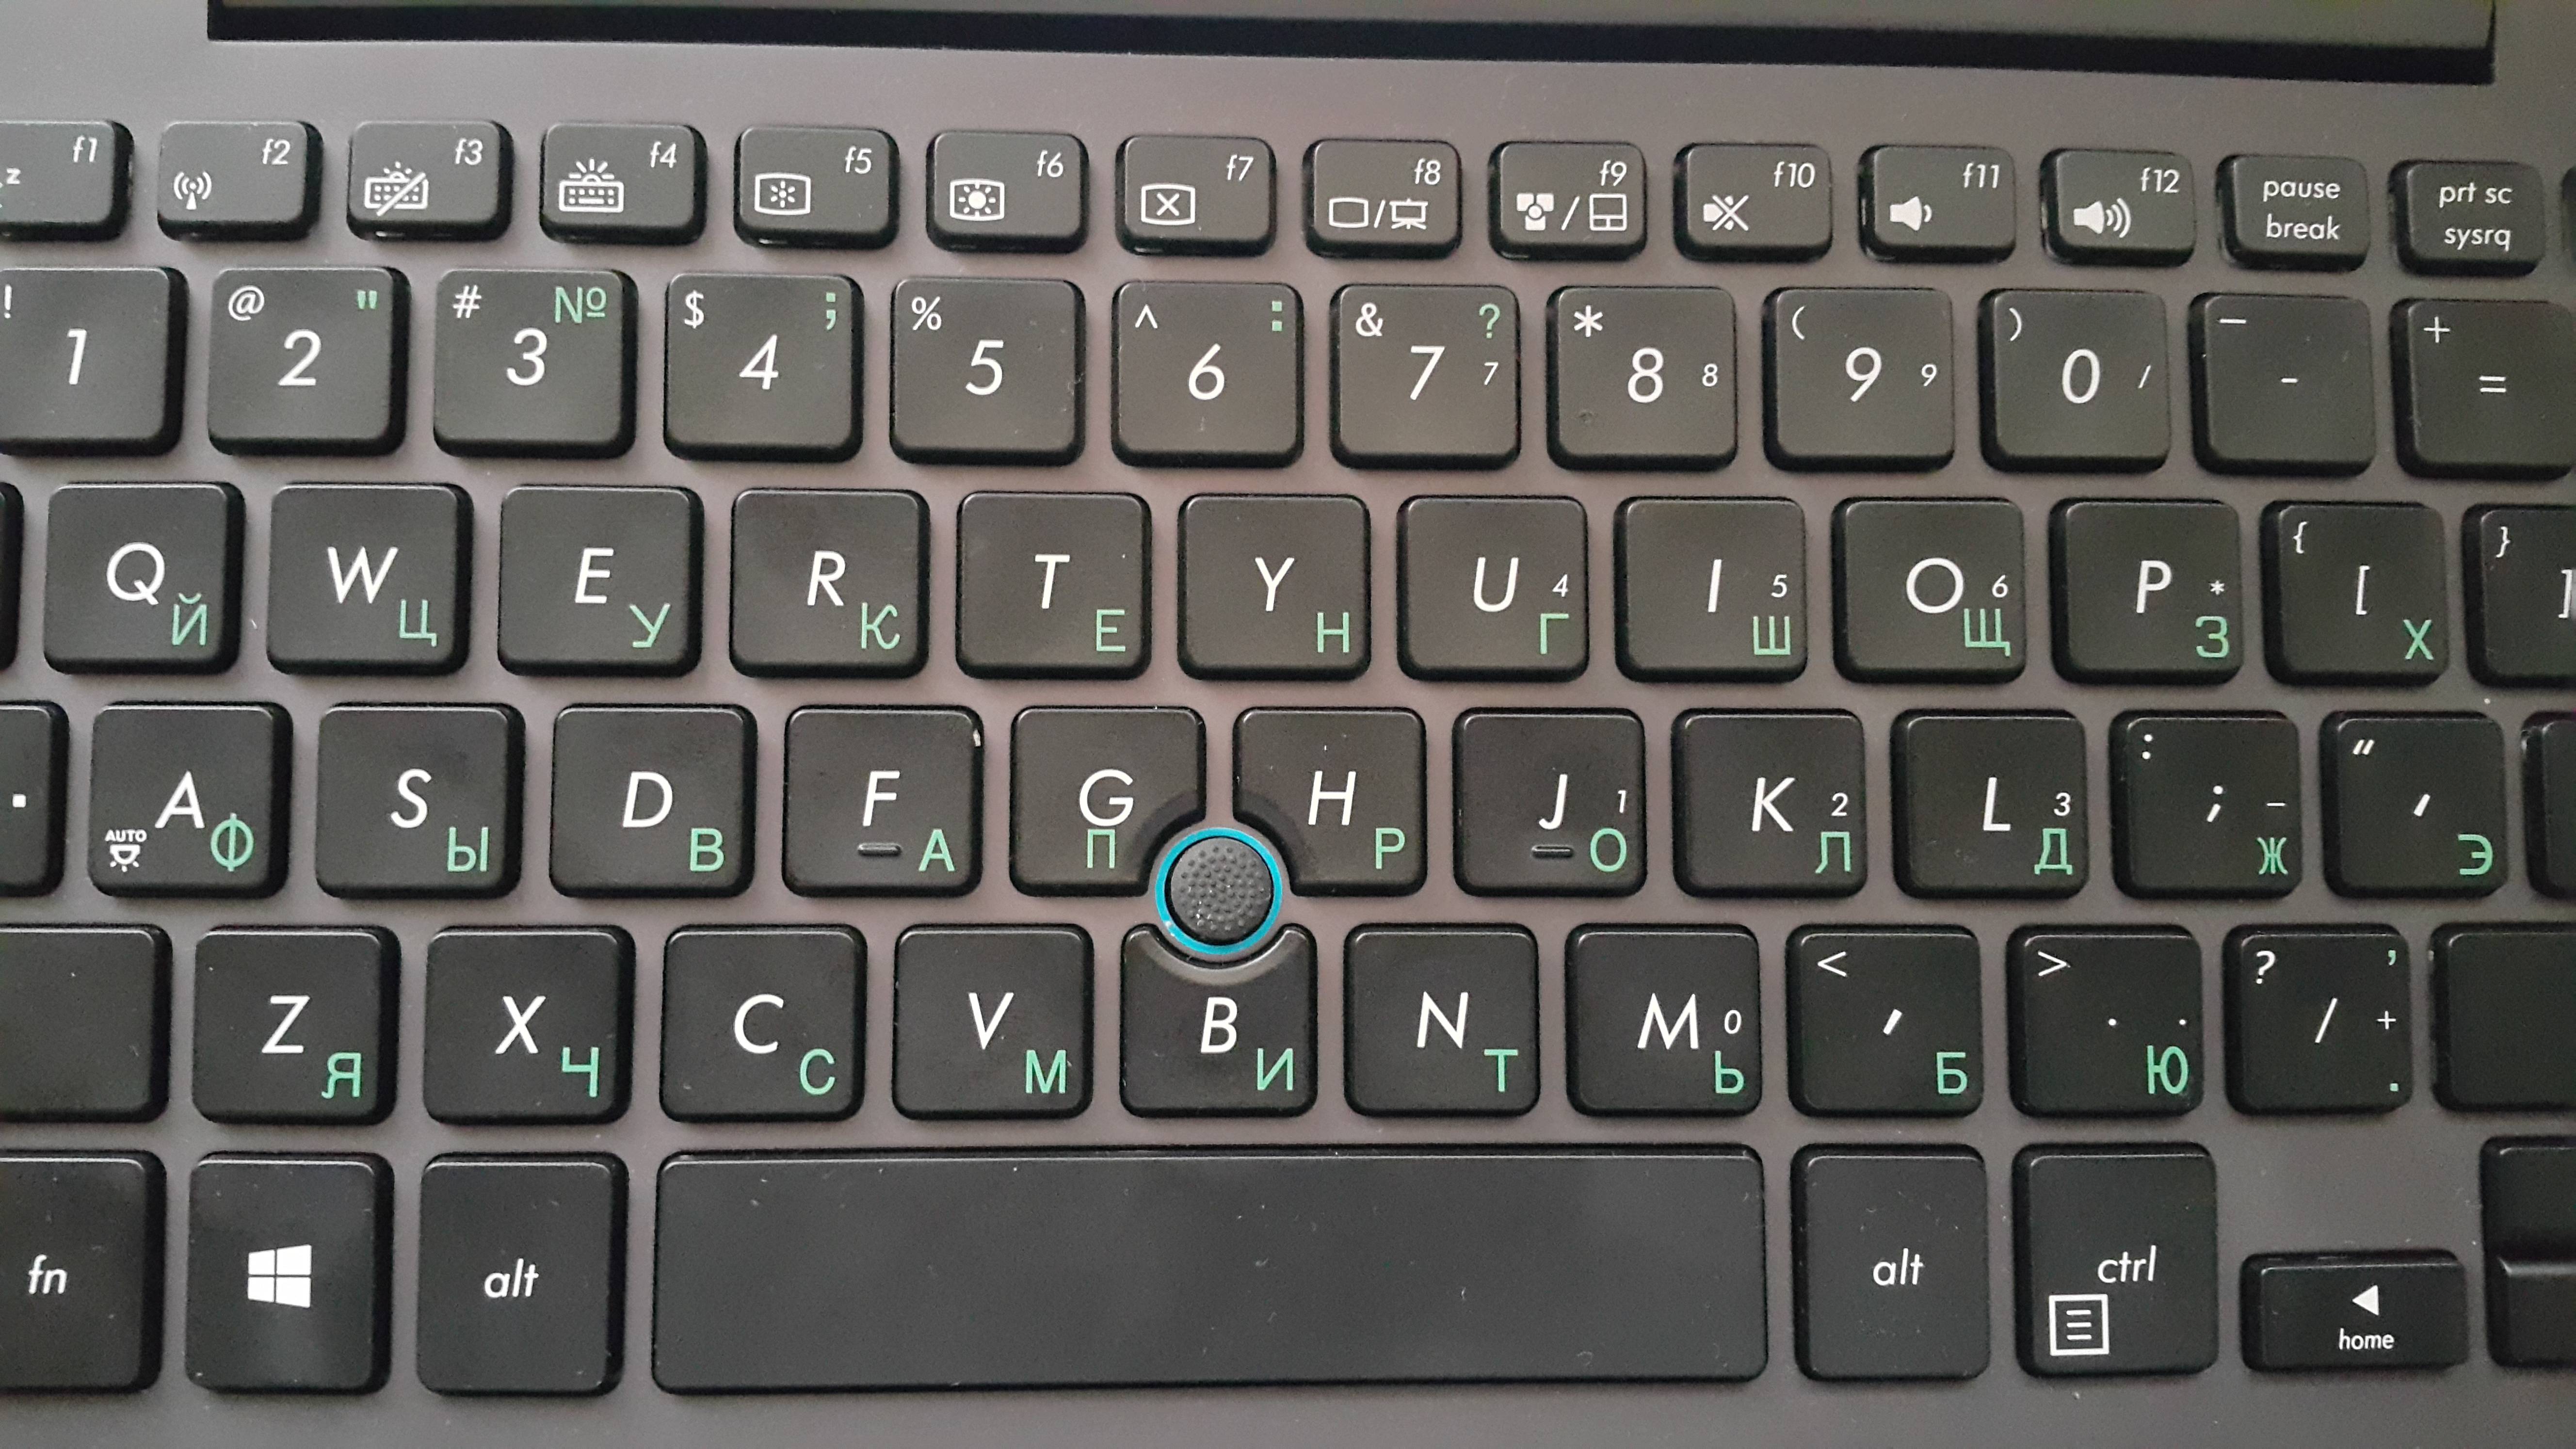 Все функции клавиш f1-f12 на клавиатуре - вектор развития. офисные системы для бизнеса